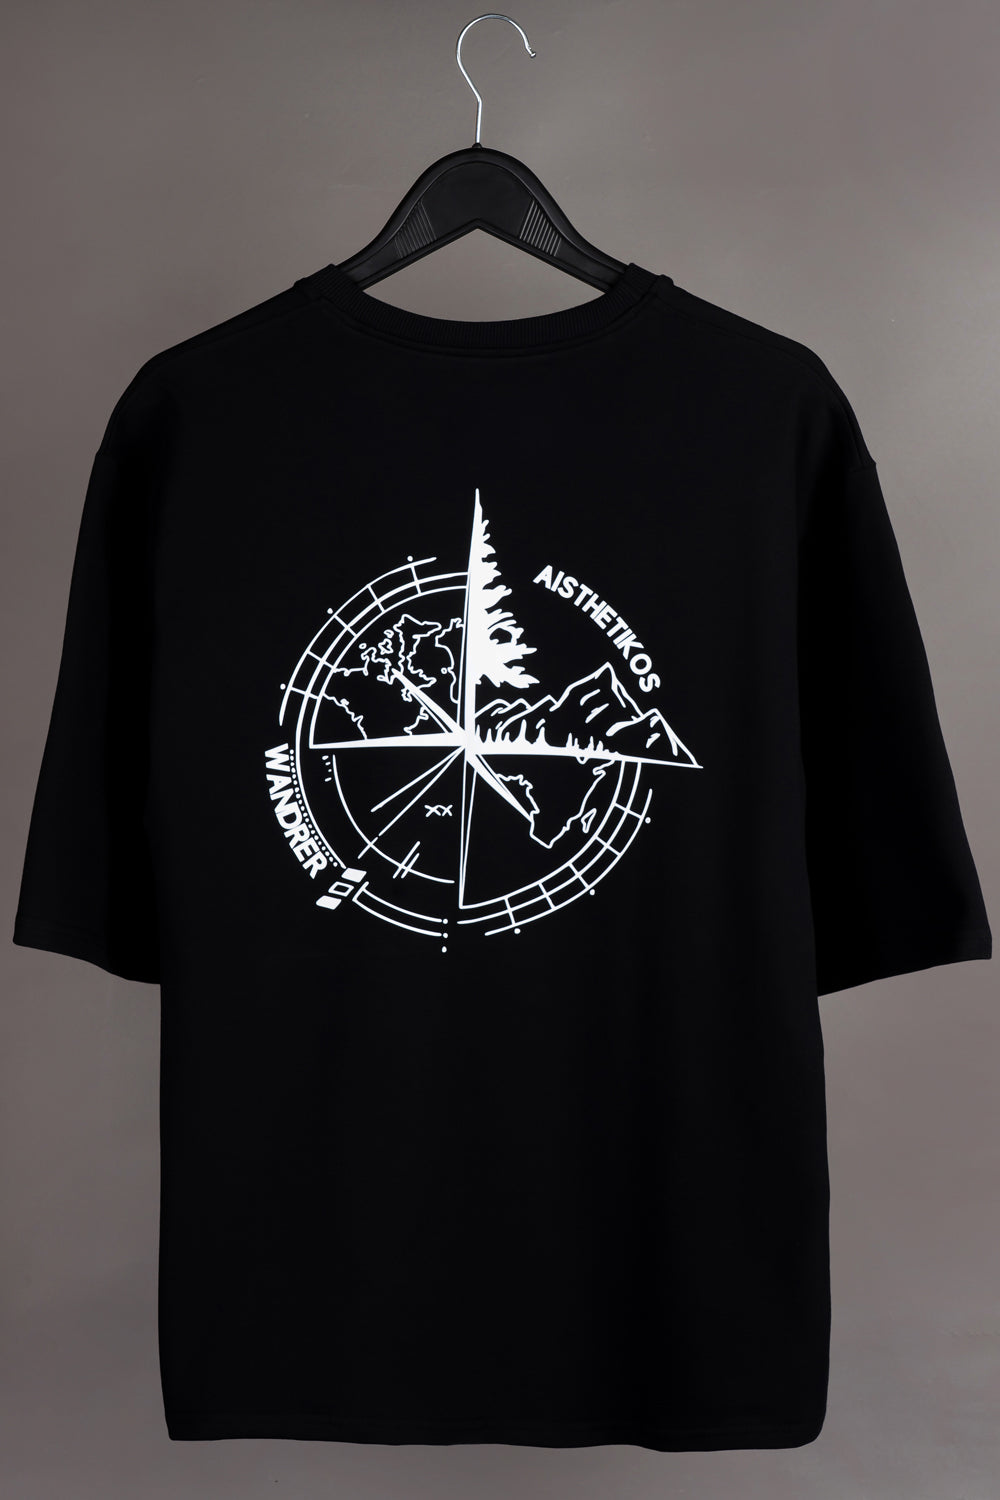 Aisthetikos Wanderer Compass T-shirt (White)